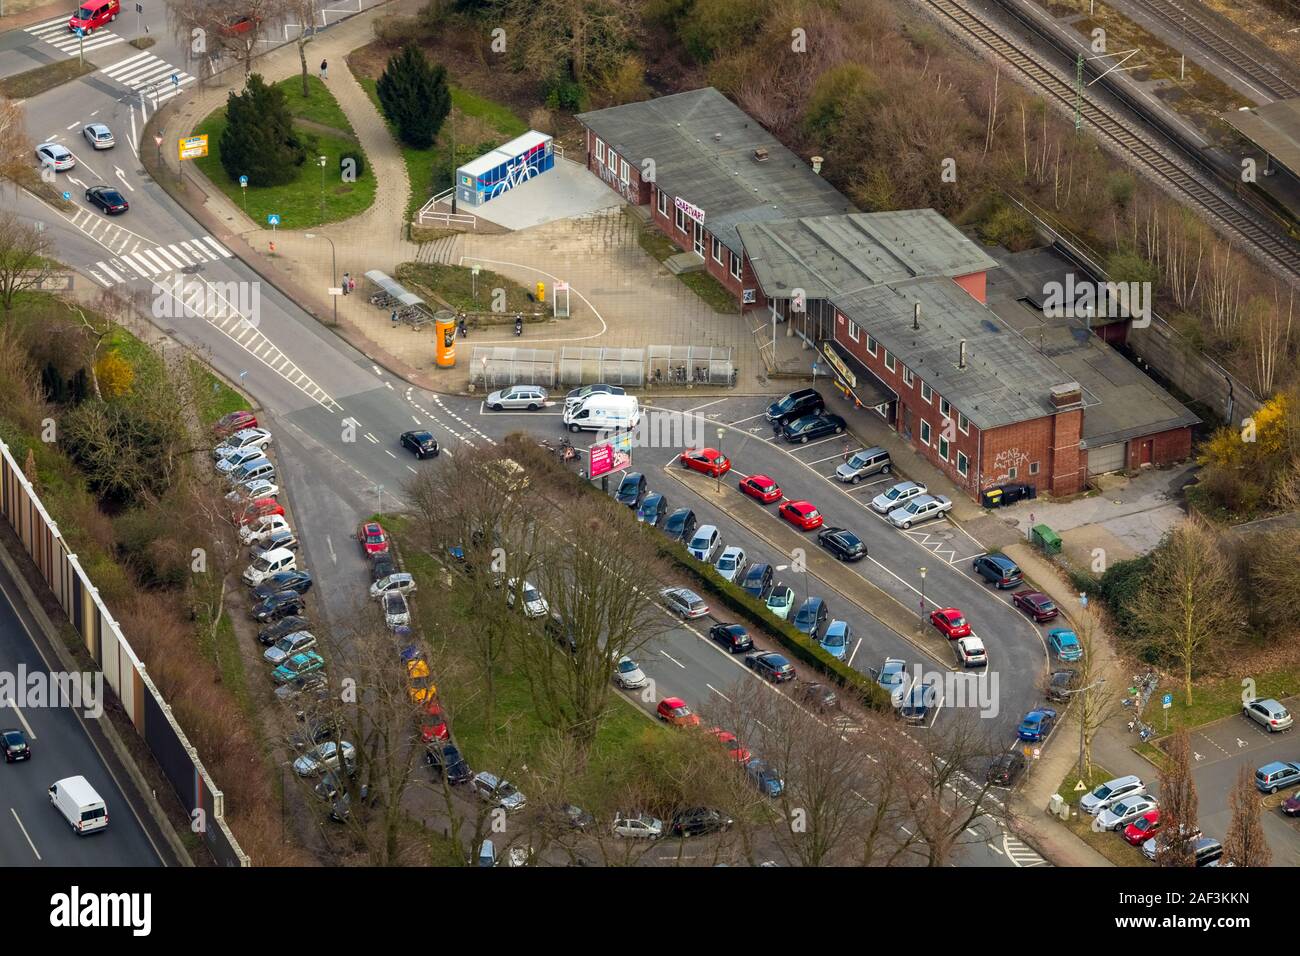 Foto aerea, stazione ferroviaria Wattenscheid con la stazione e il piazzale antistante, autostrada A40, Ruhrschnellweg, parcheggi, parcheggio, Wattenscheid, Bochum Ruhr Foto Stock